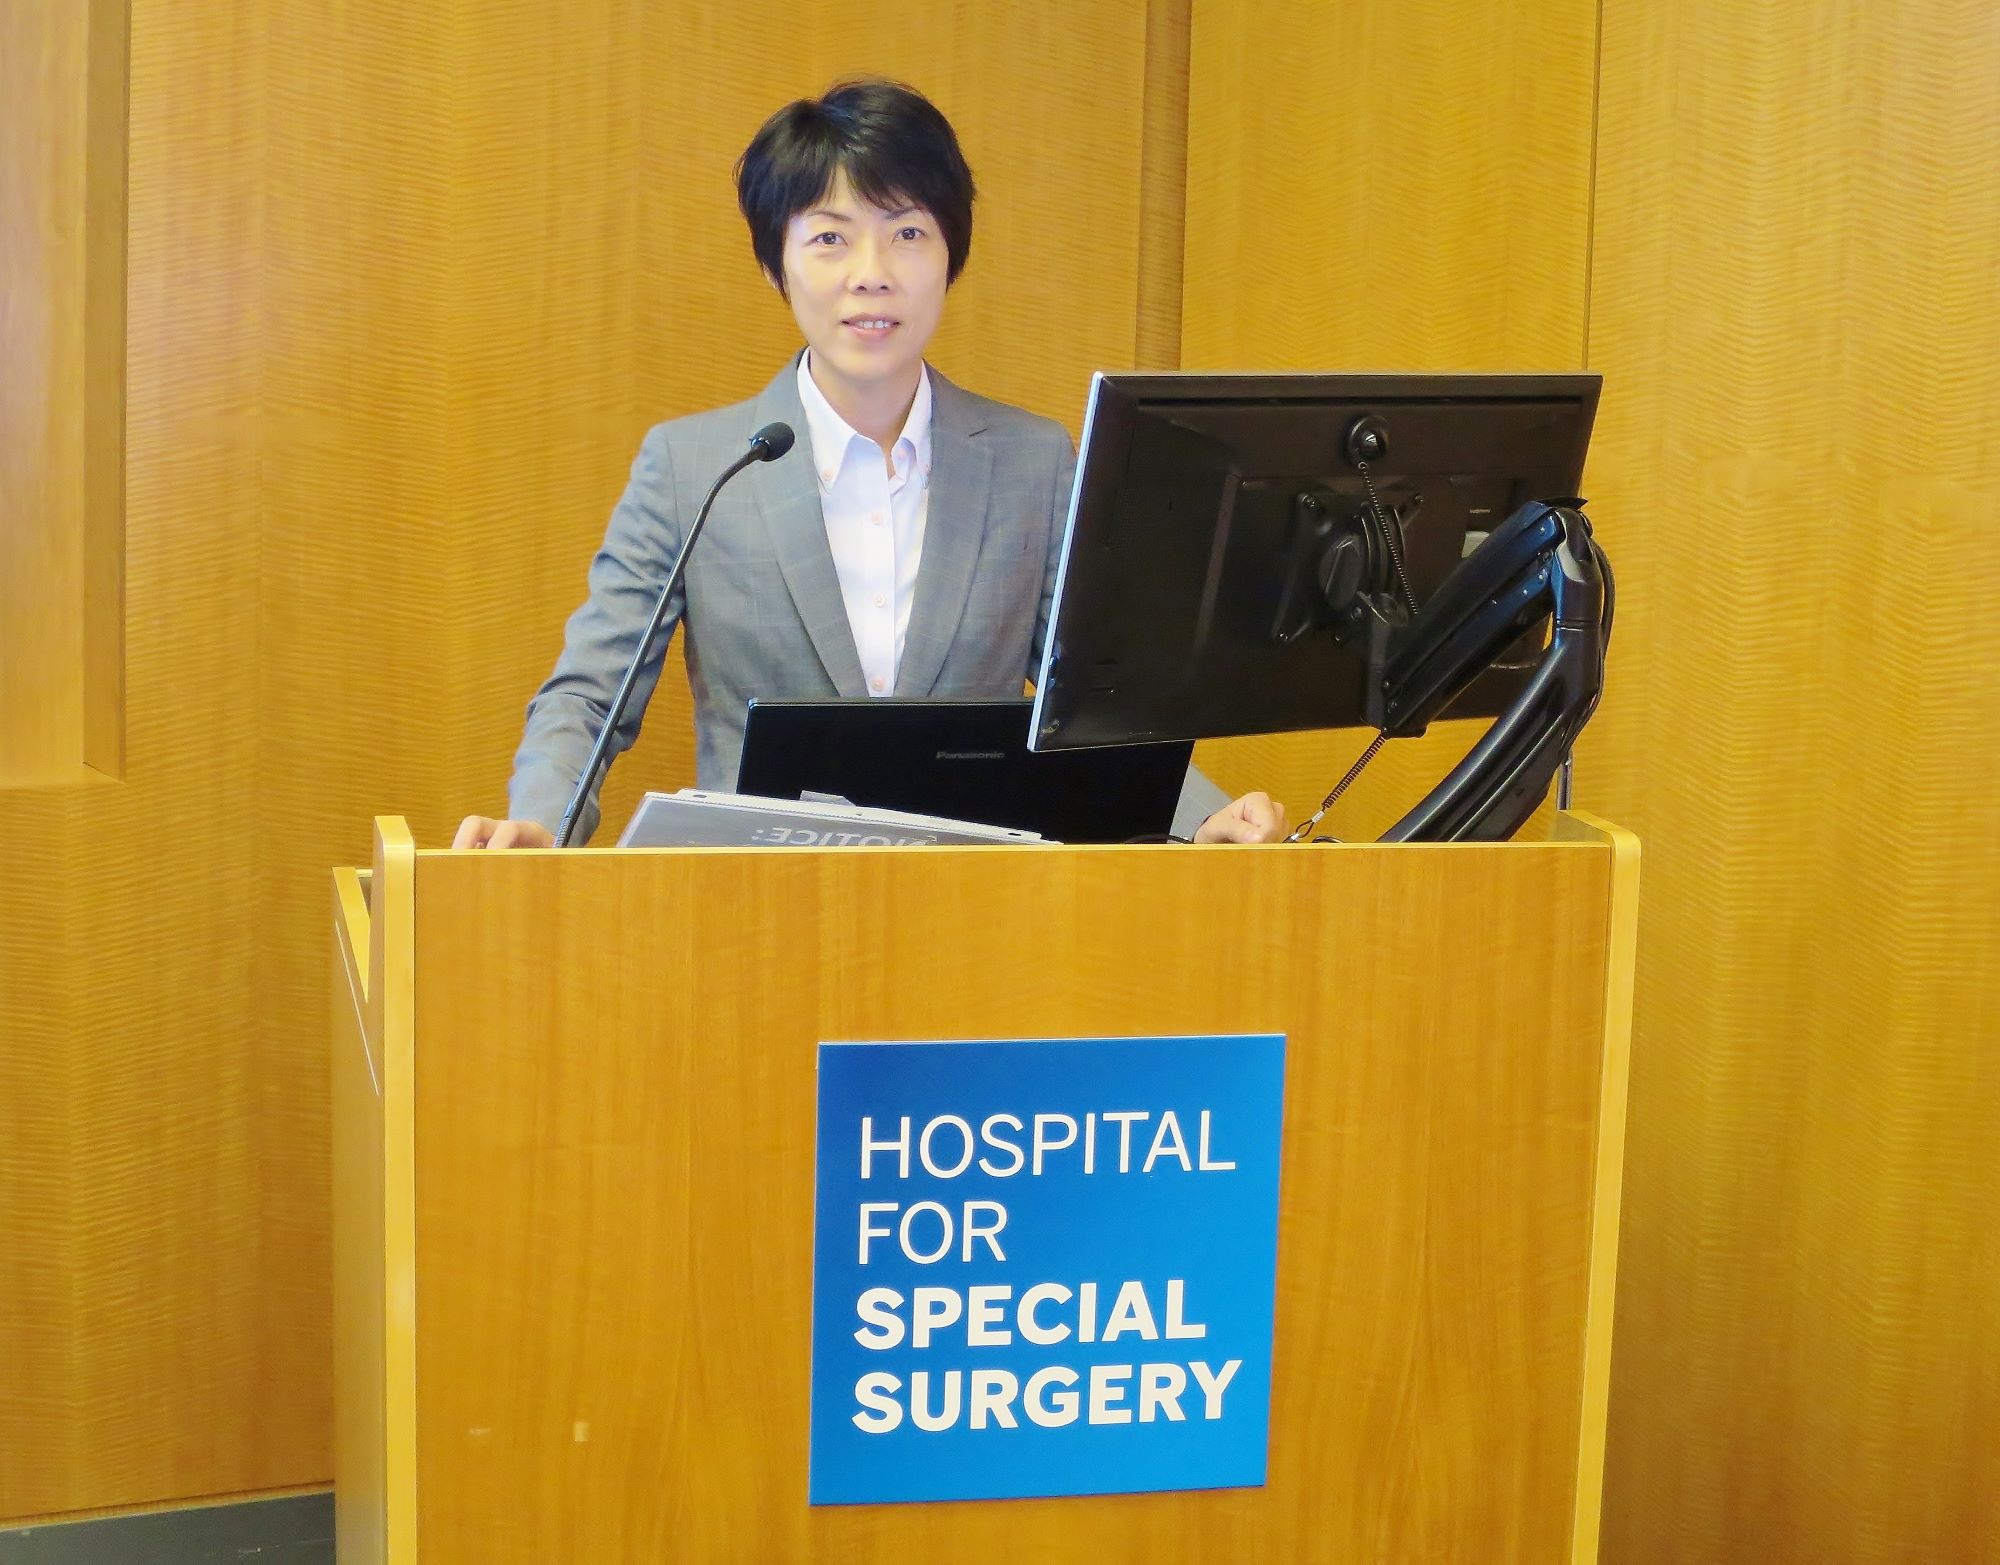 日本スポーツ整形外科学会(旧)のtraveling fellowとして米国へ研修に行った際、HSS(Hospital for Special Surgery)でのプレゼン写真